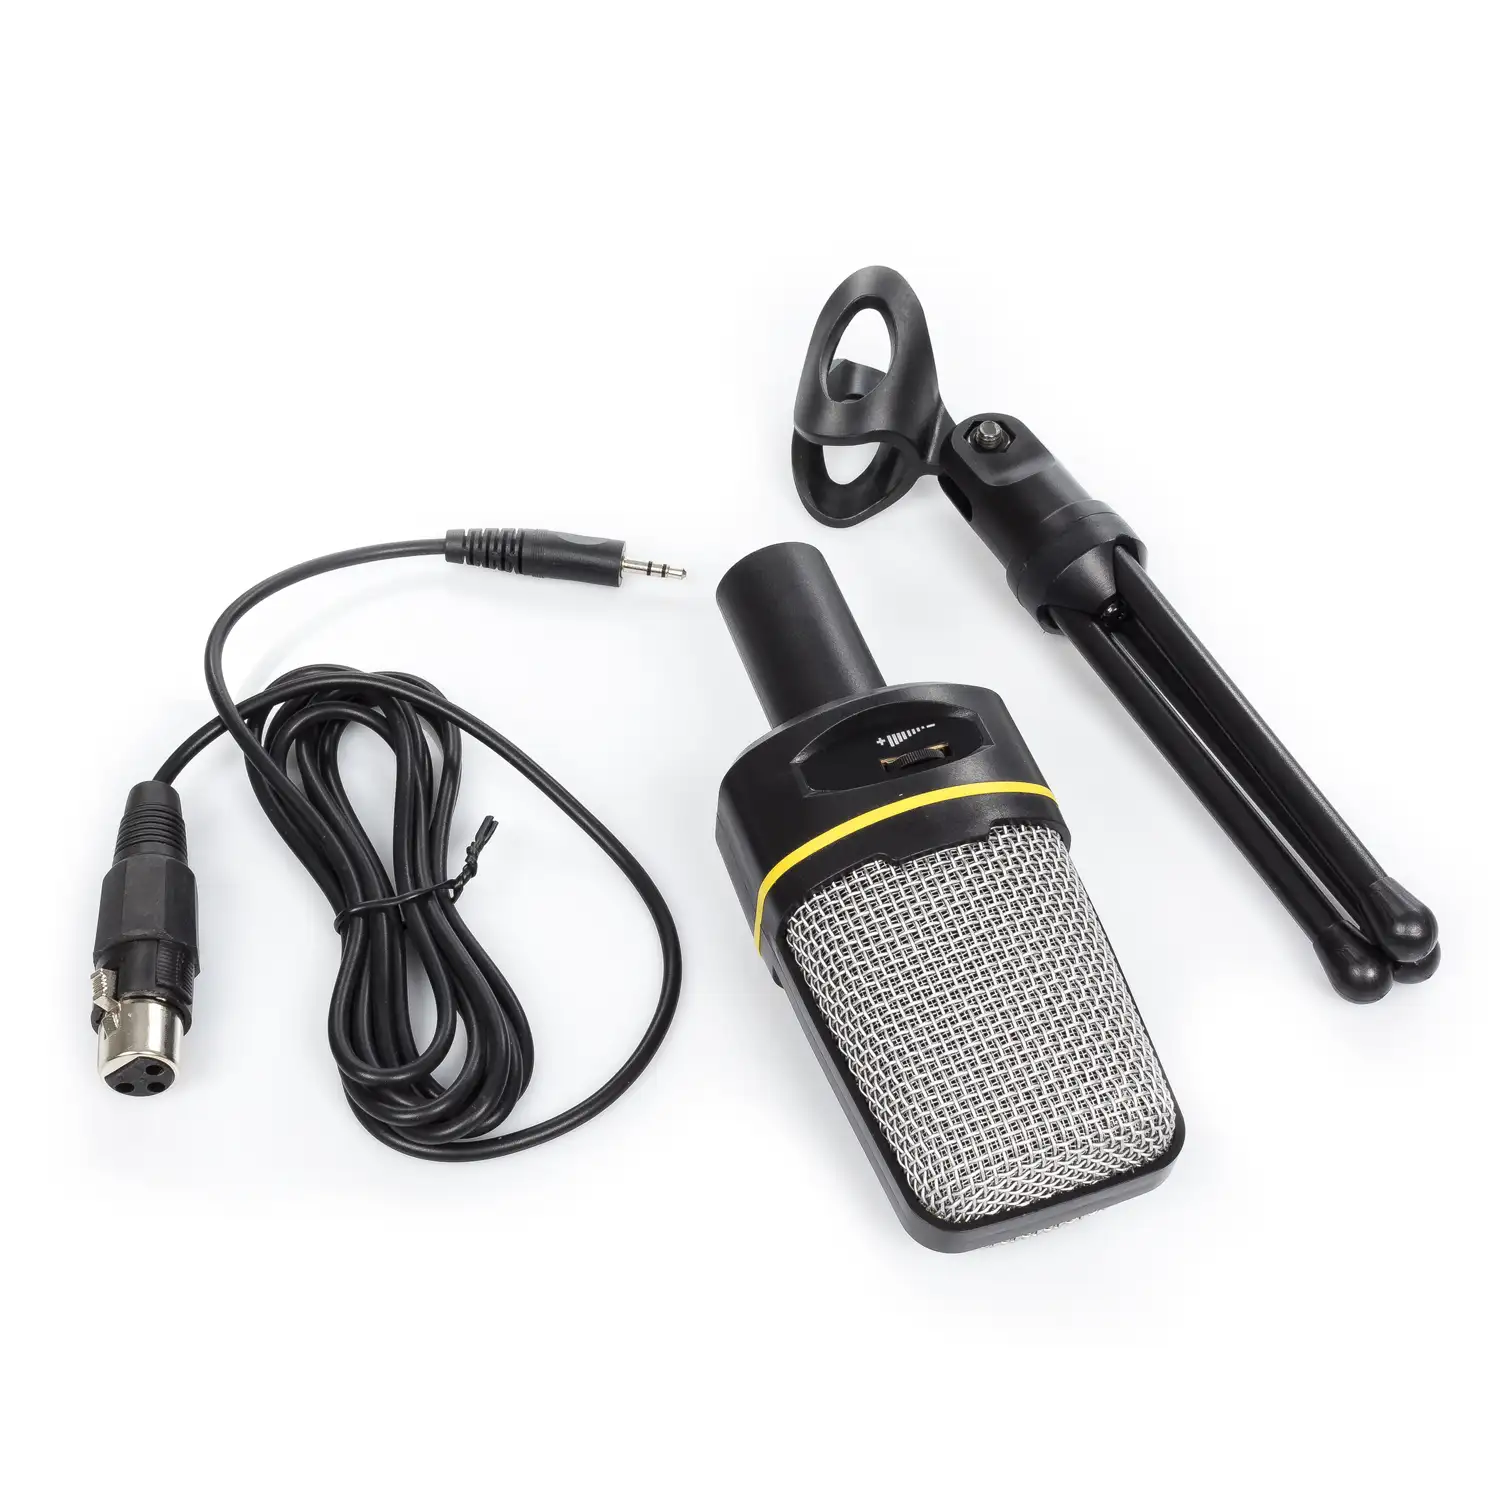 Micrófono unidireccional SF-920 con trípode. Conexión Canon XLR y minijack. Para PC, Mac, portátil, etc.